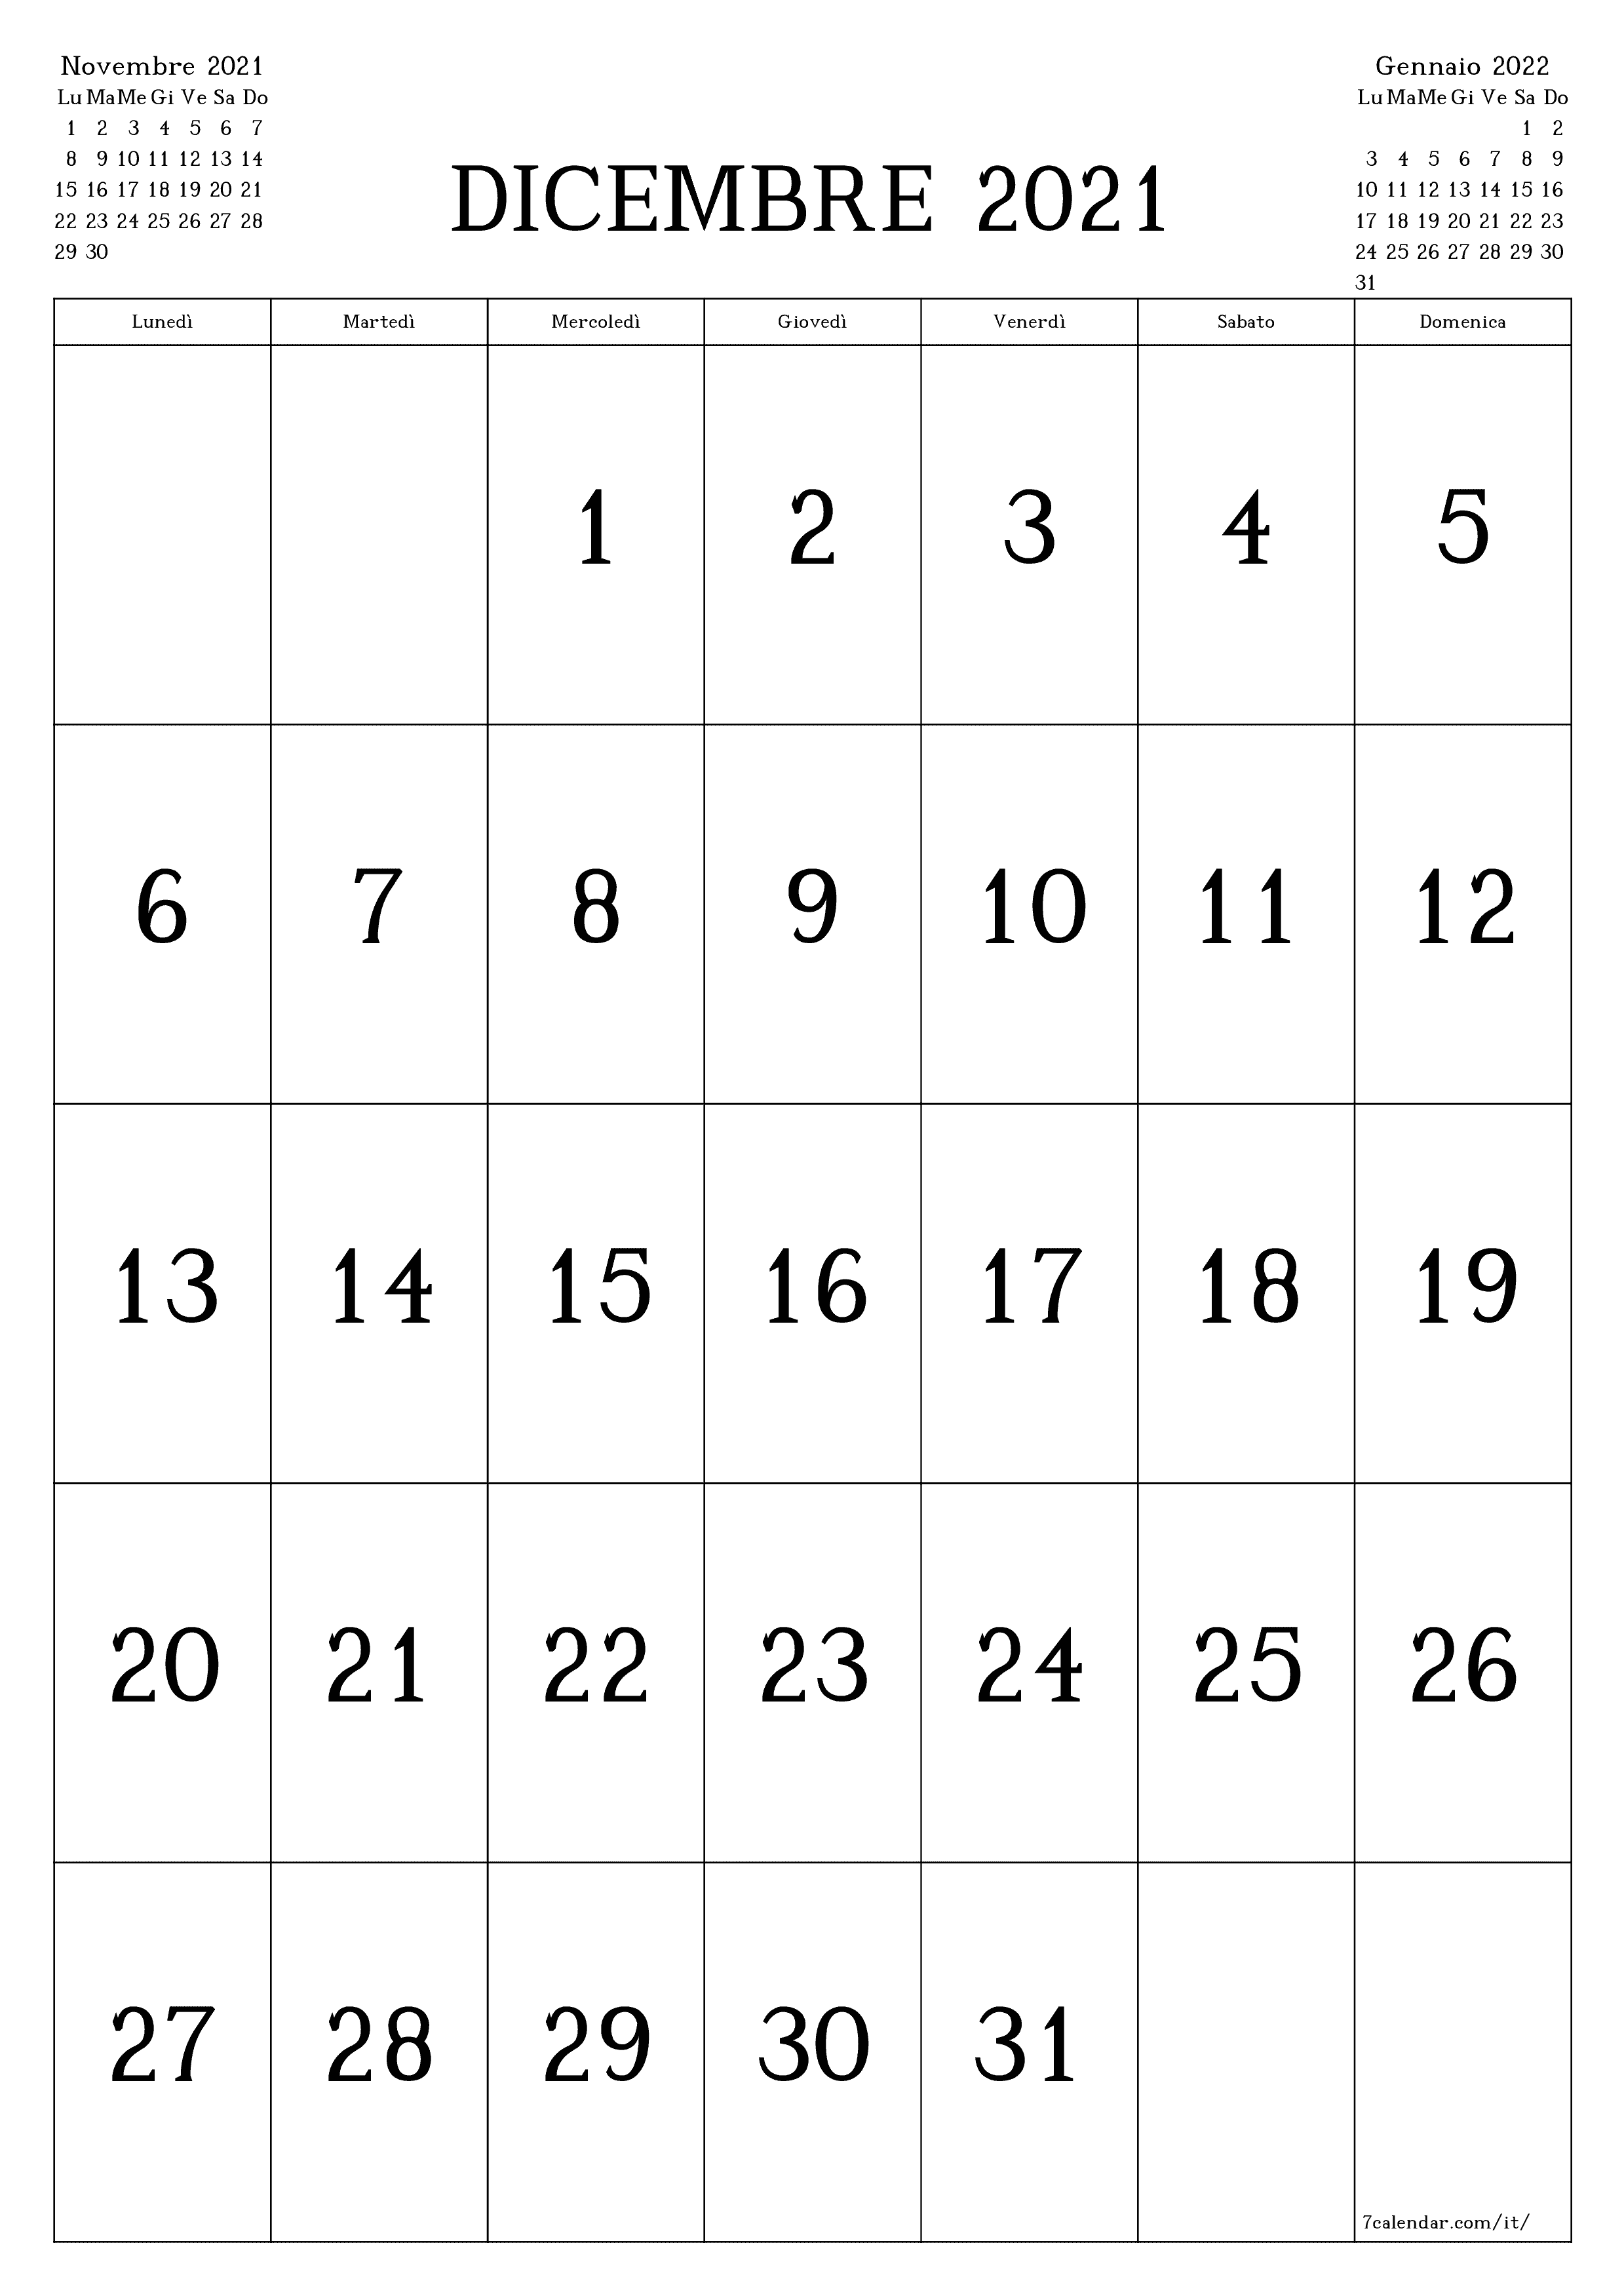 Calendario mensile vuoto per il mese Dicembre 2021 salva e stampa in PDF PNG Italian - 7calendar.com